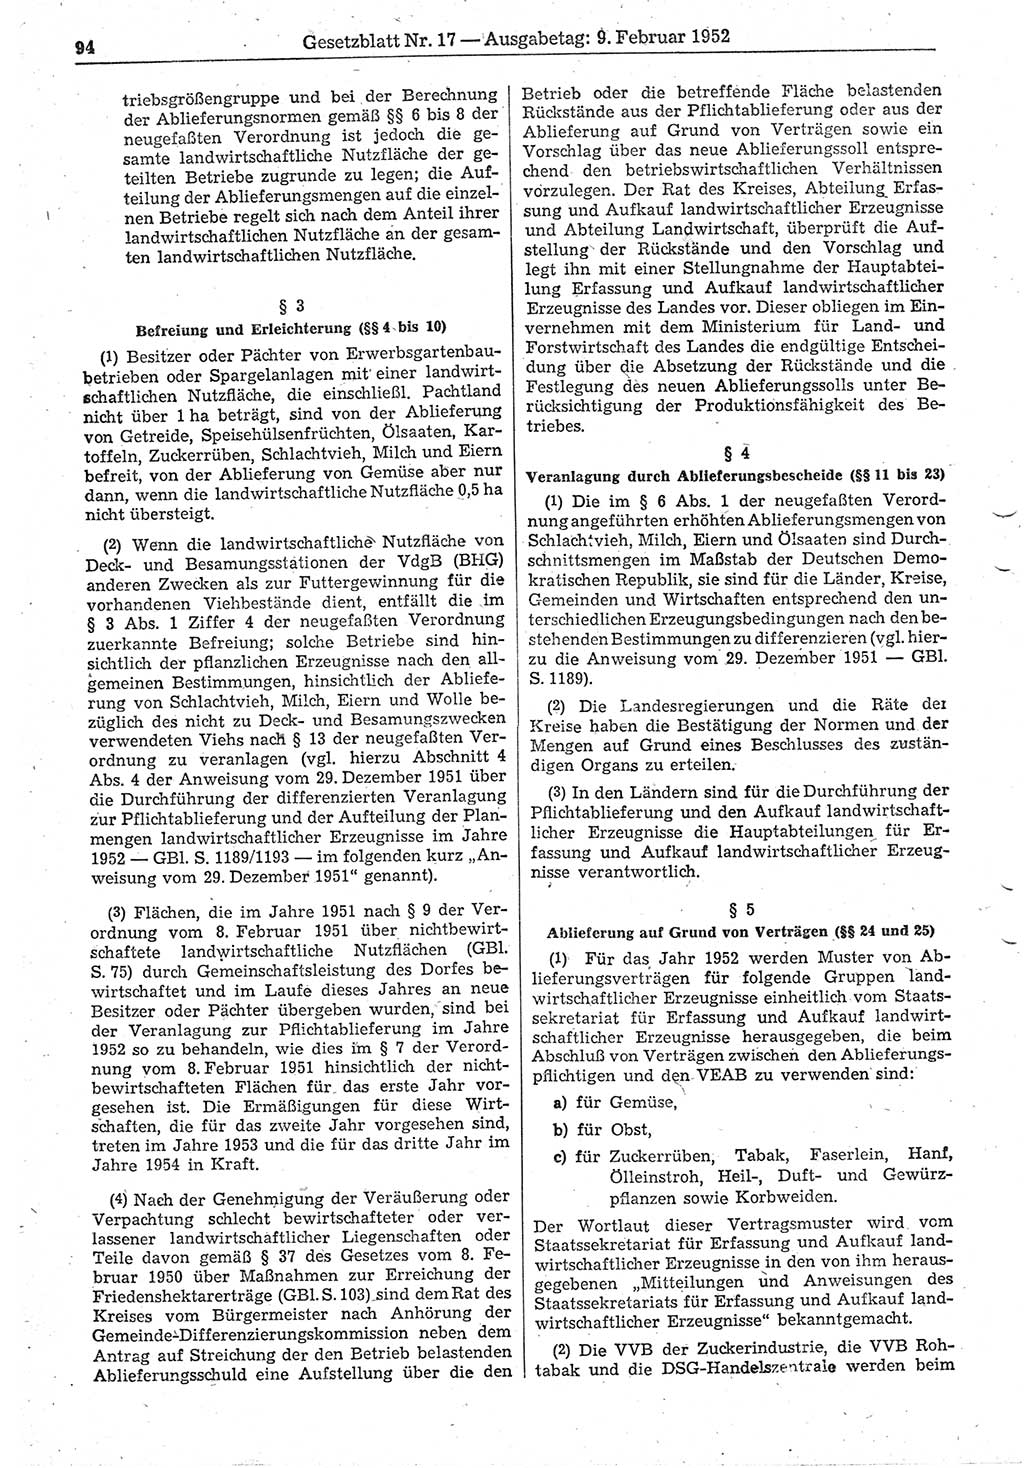 Gesetzblatt (GBl.) der Deutschen Demokratischen Republik (DDR) 1952, Seite 94 (GBl. DDR 1952, S. 94)